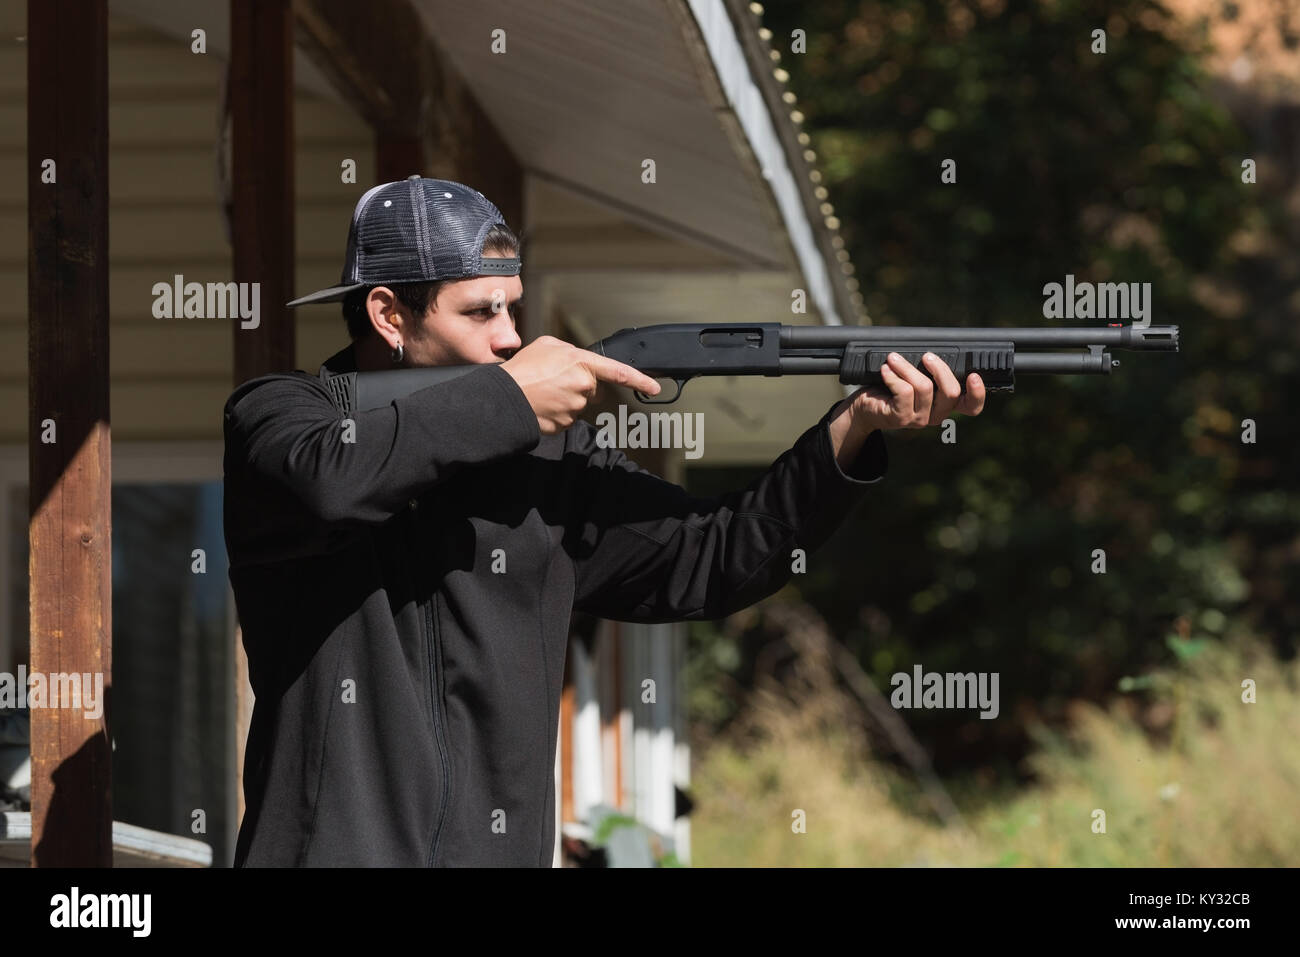 Man aiming shotgun at target in shooting range Stock Photo